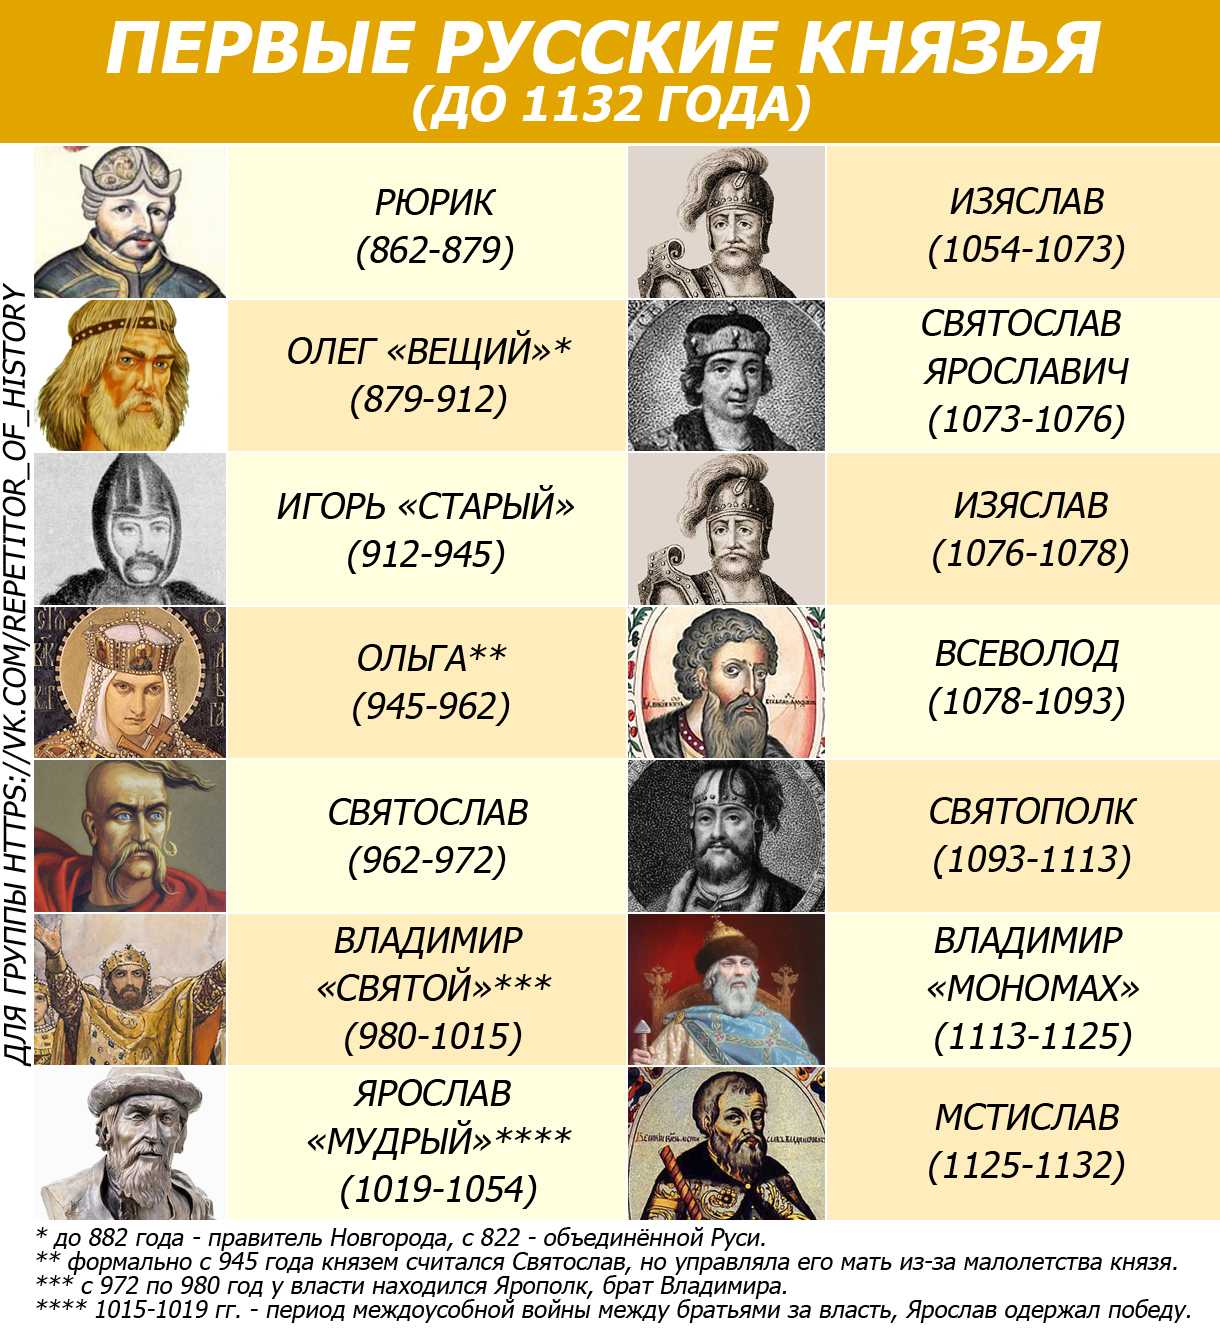 Сочинение-рассуждение 1113-1125 период правления владимира всеволодовича мономаха